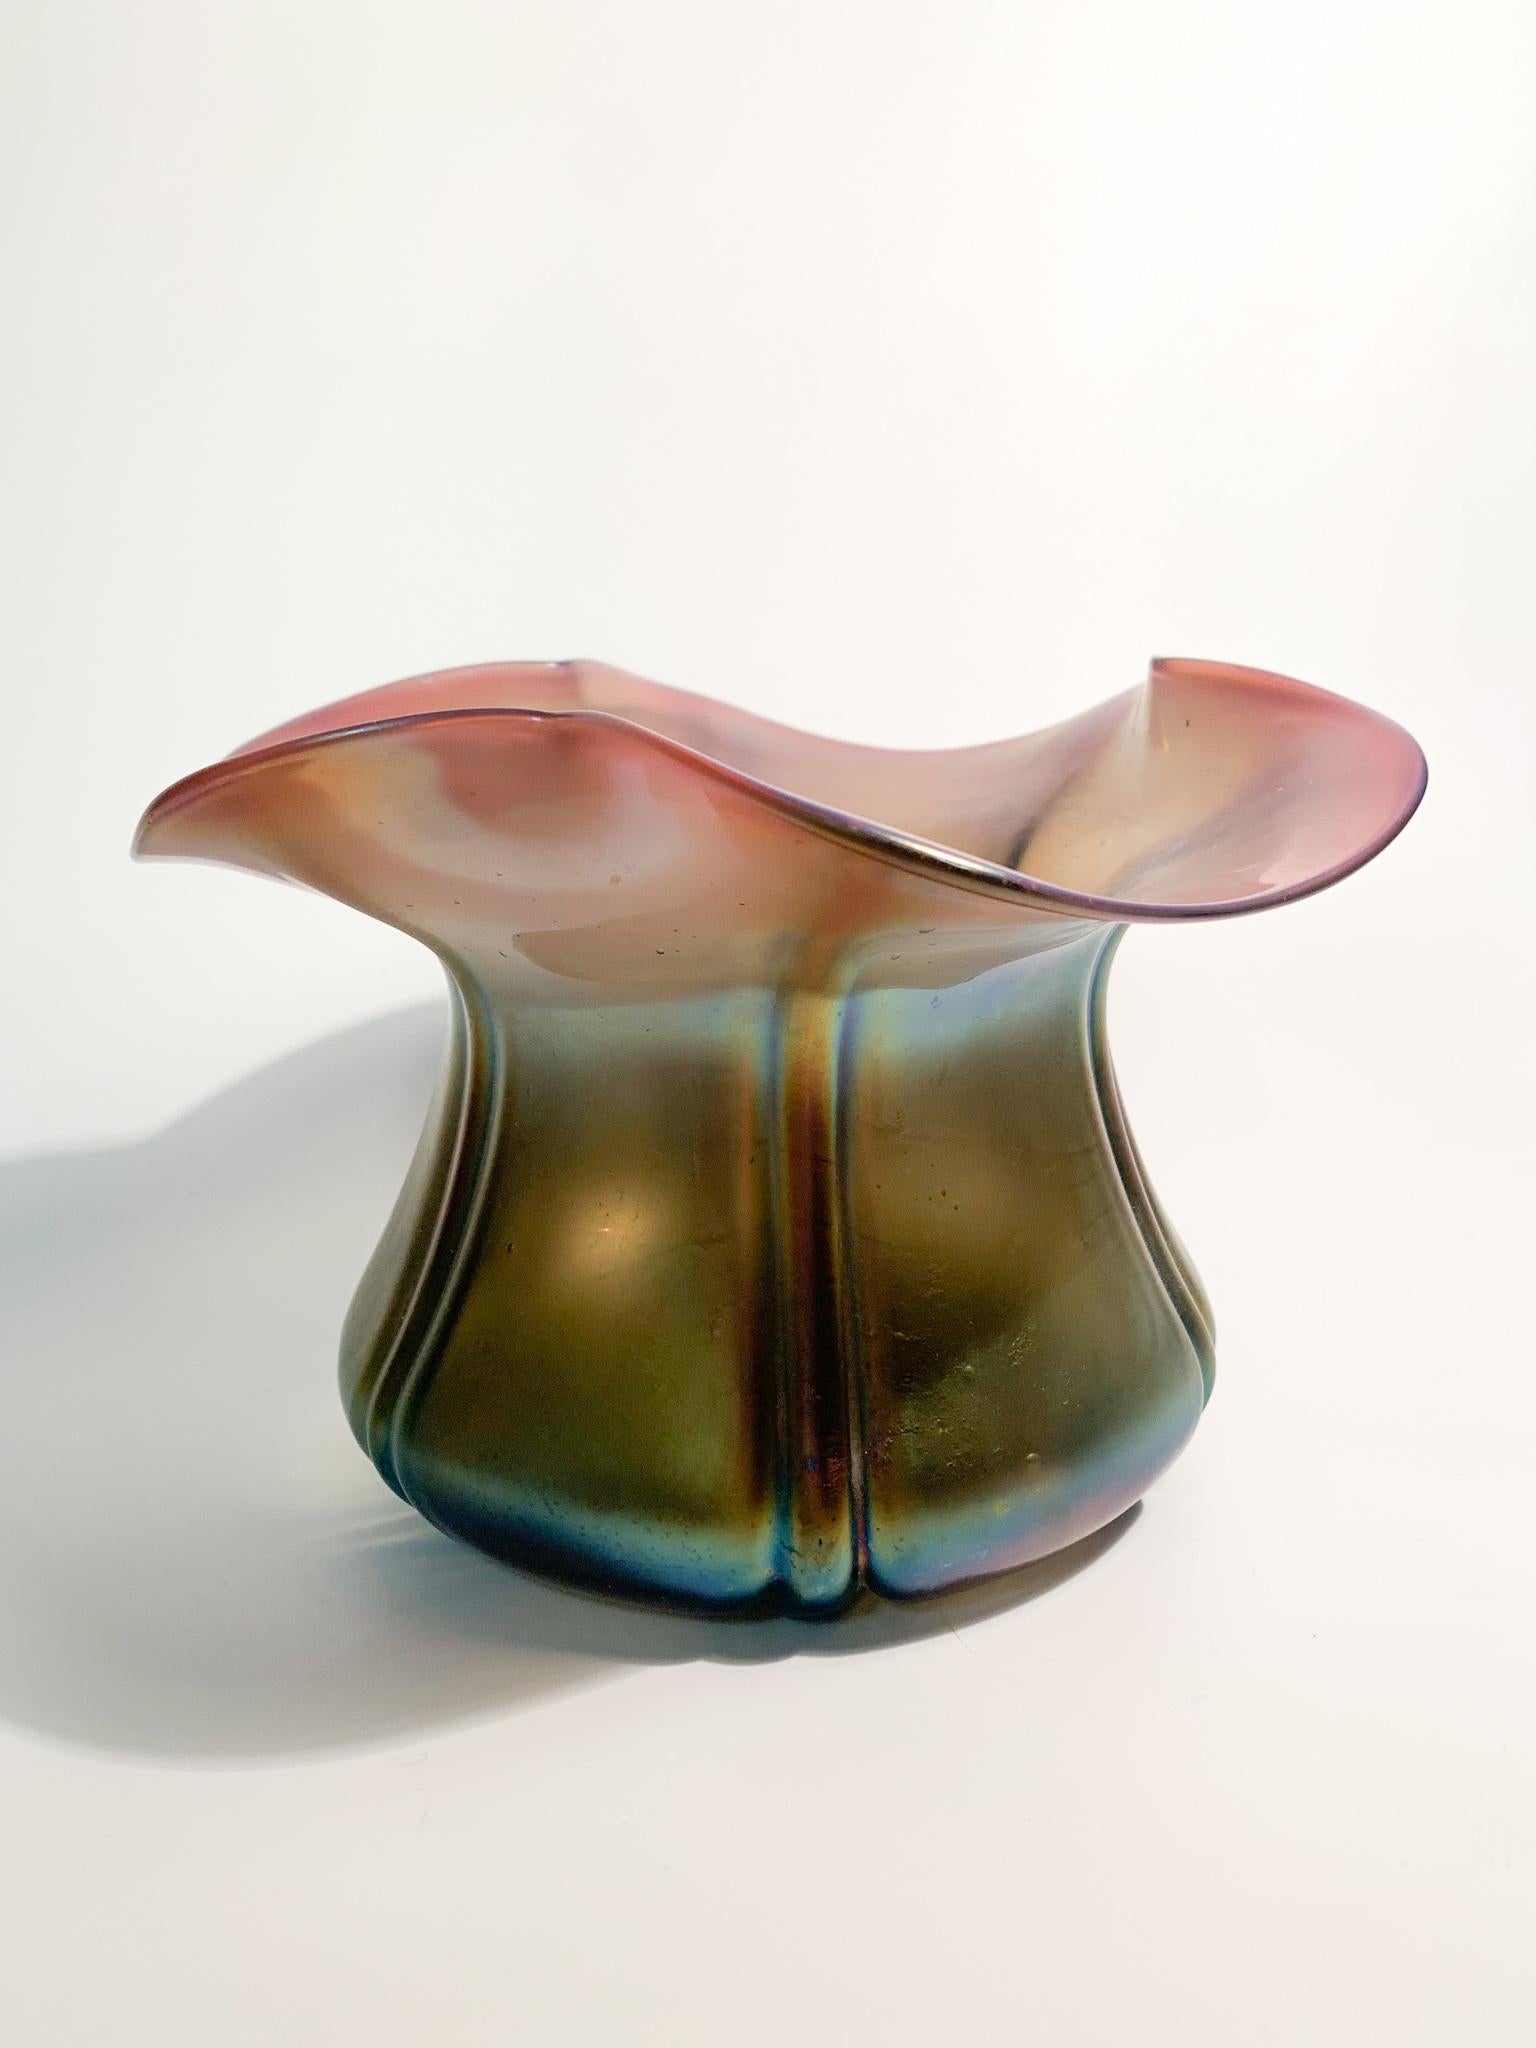 Vase aus irisierendem österreichischem Loetz-Glas, Form mit Blütenöffnung und Farben von Lila bis Käfer, hergestellt in den 1940er Jahren

Maße: Ø cm 18 h cm 11

Die Produktion von Loetz-Glas begann mit Johan Loetz (1778-1848) im 18. Jahrhundert